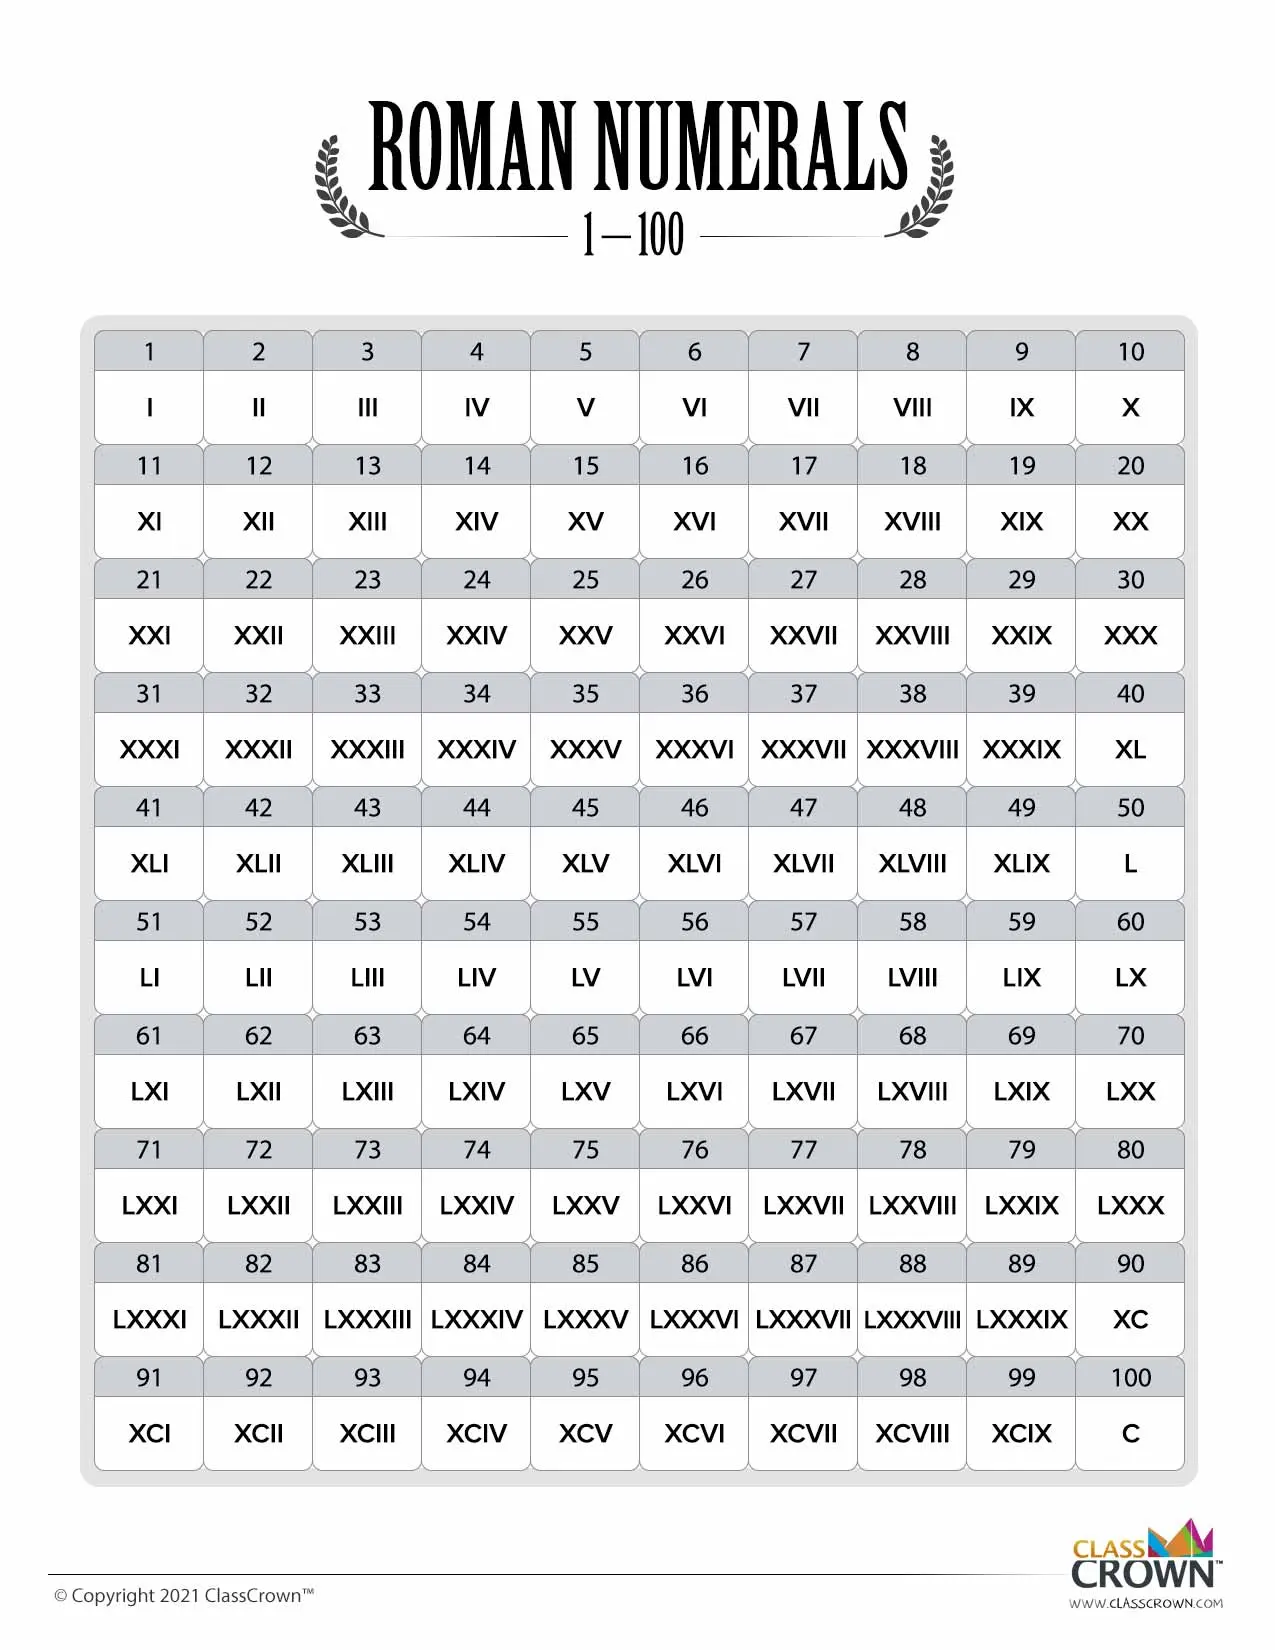 Roman Numerals chart 1 through 100 grid